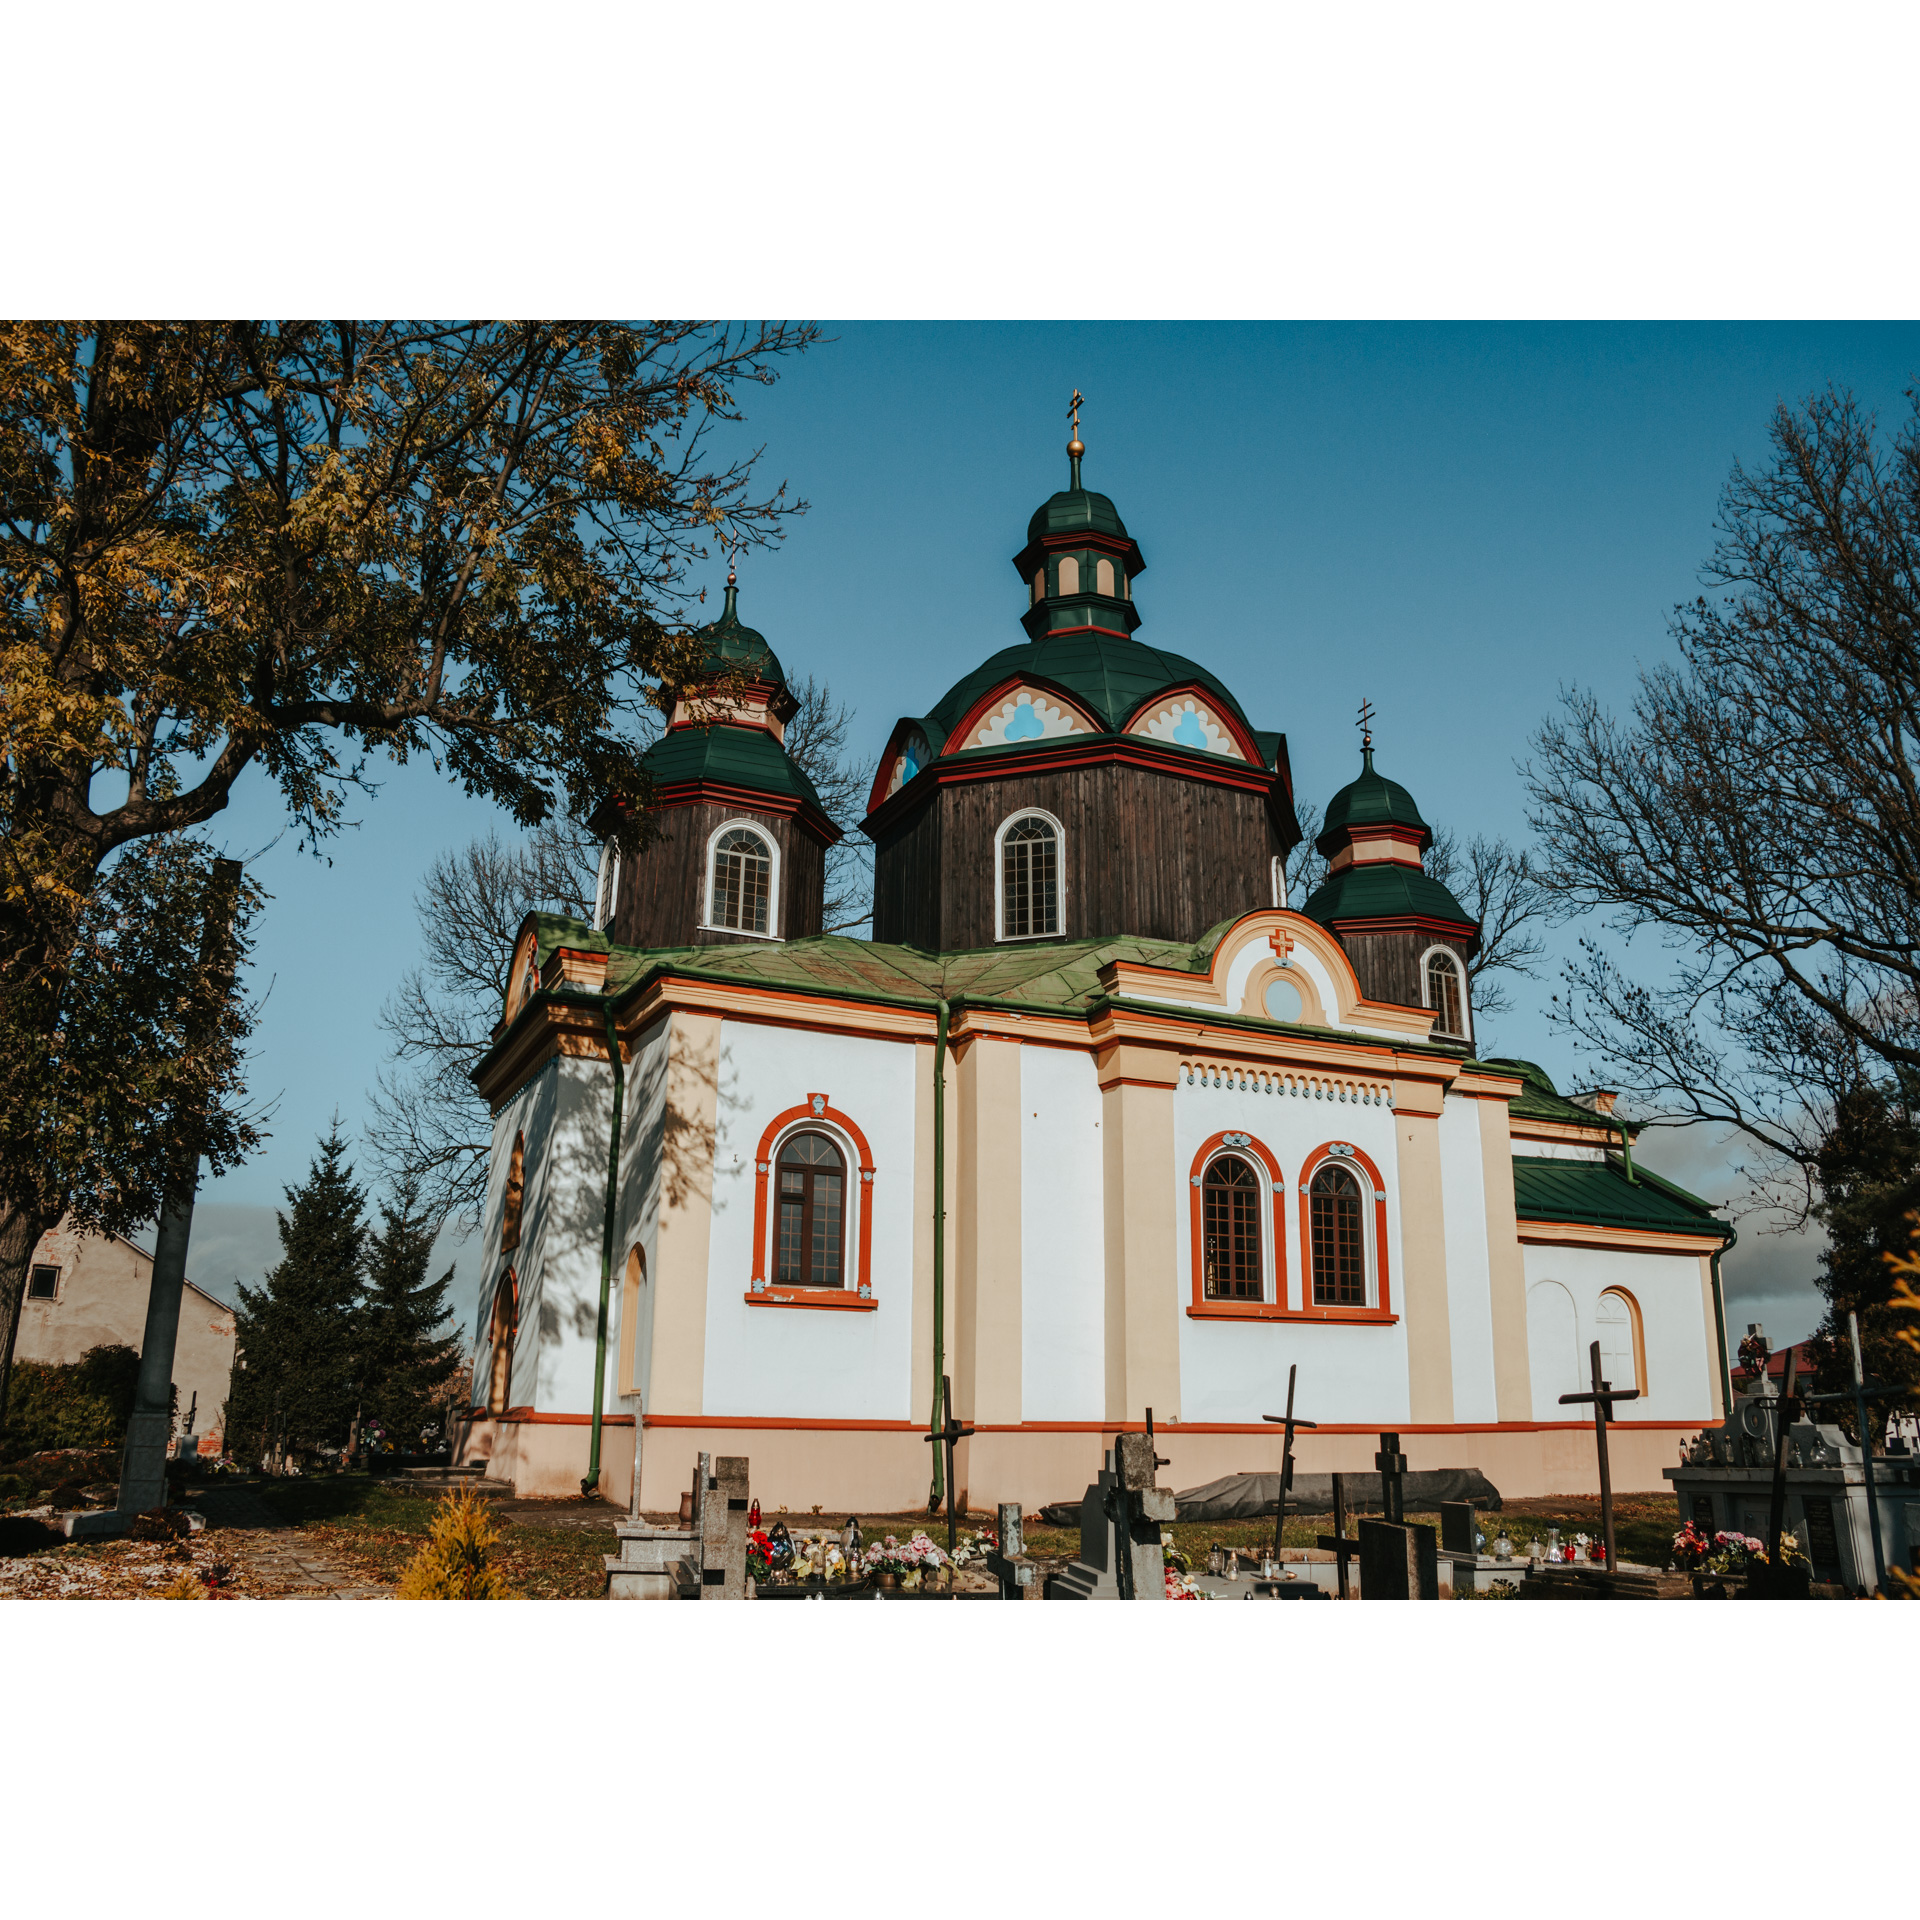 Biała cerkiew z trzema drewnianymi wieżami z zielonym dachem i czerwonymi akcentami wokół okien, dachu i na dole budynku oraz cmentarz na pierwszym planie